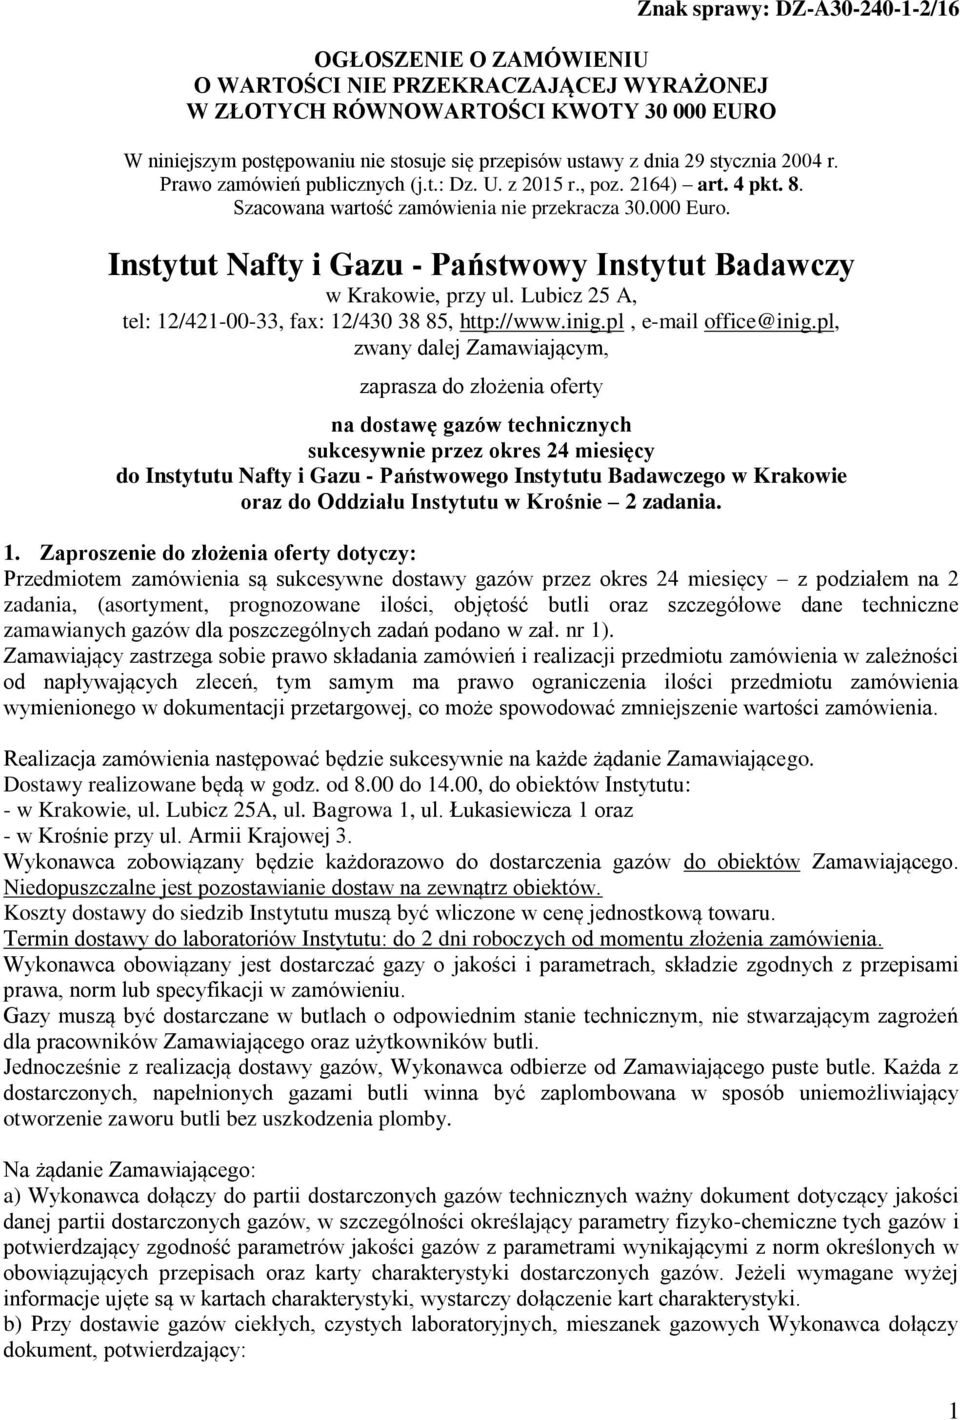 Instytut Nafty i Gazu - Państwowy Instytut Badawczy w Krakowie, przy ul. Lubicz 25 A, tel: 12/421-00-33, fax: 12/430 38 85, http://www.inig.pl, e-mail office@inig.